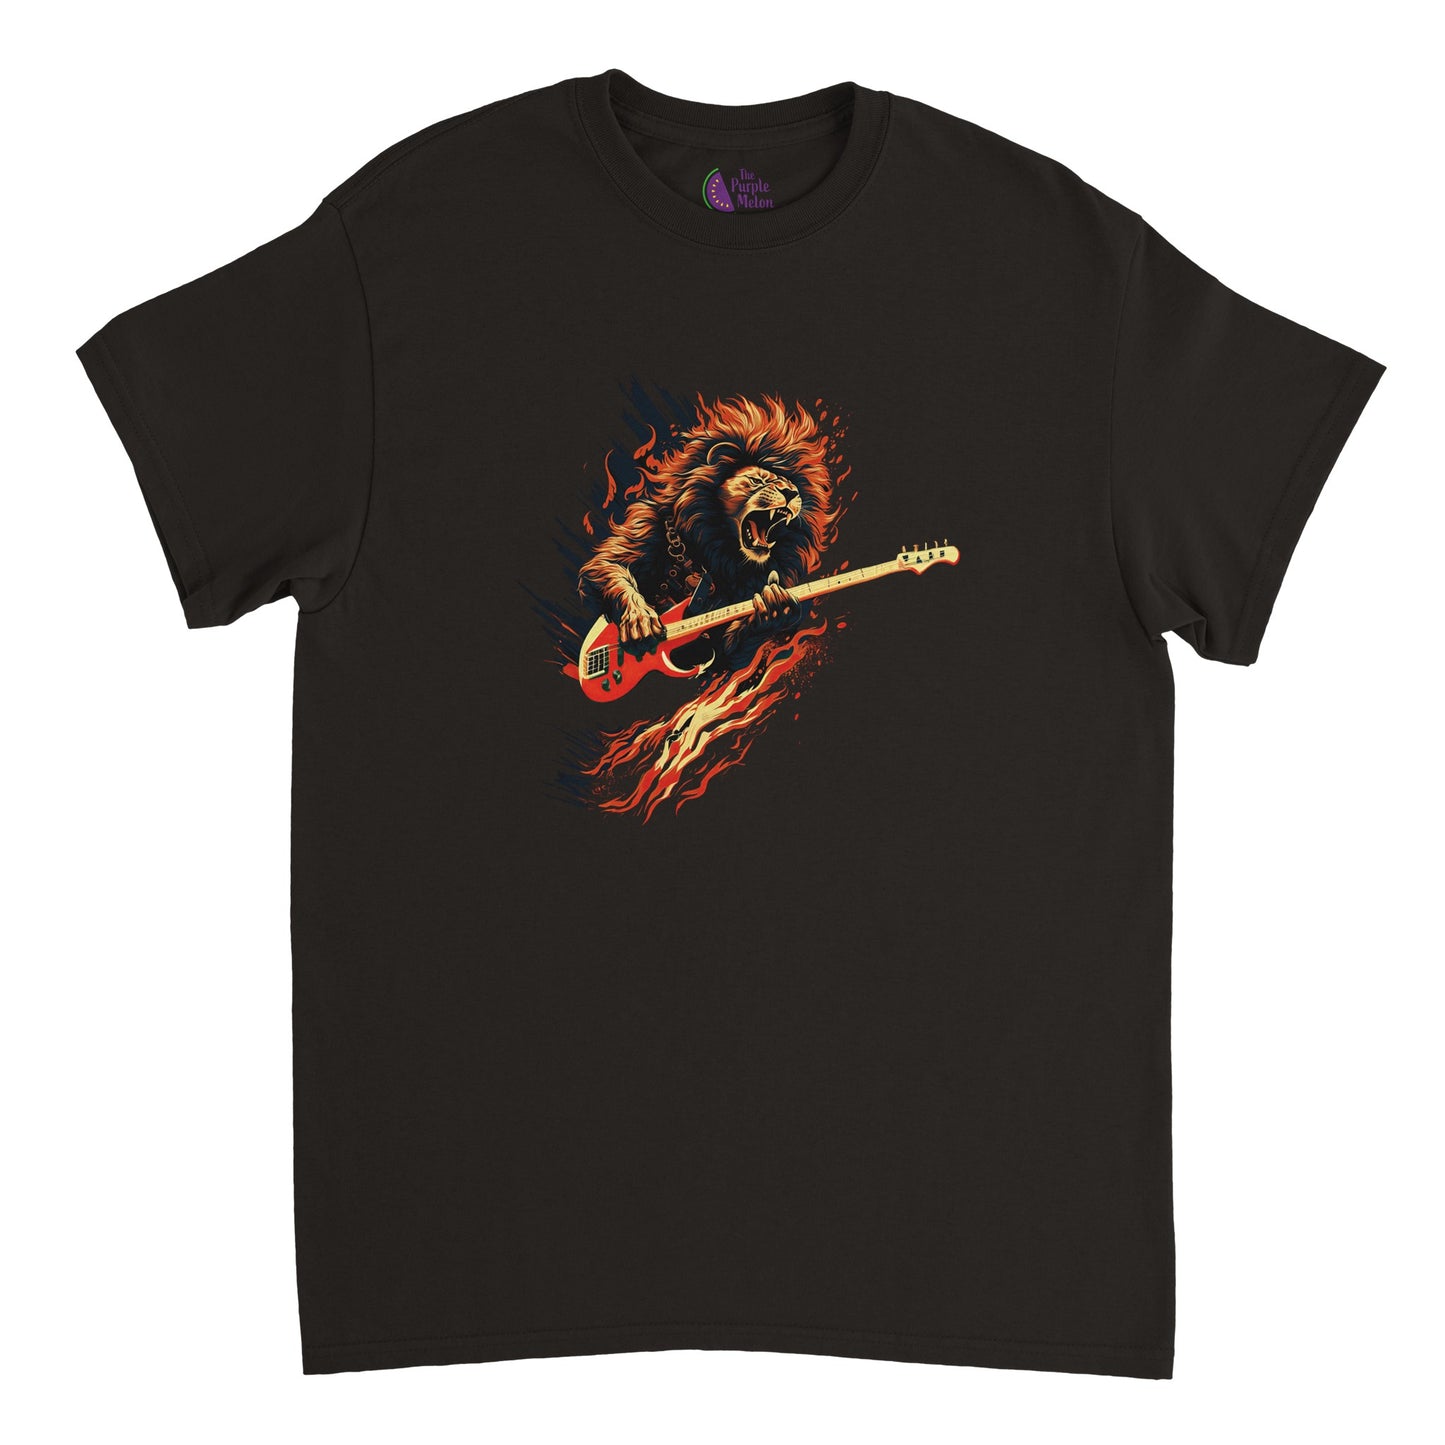 Flaming Bass Guitarist Lion Heavyweight Crewneck T-shirt